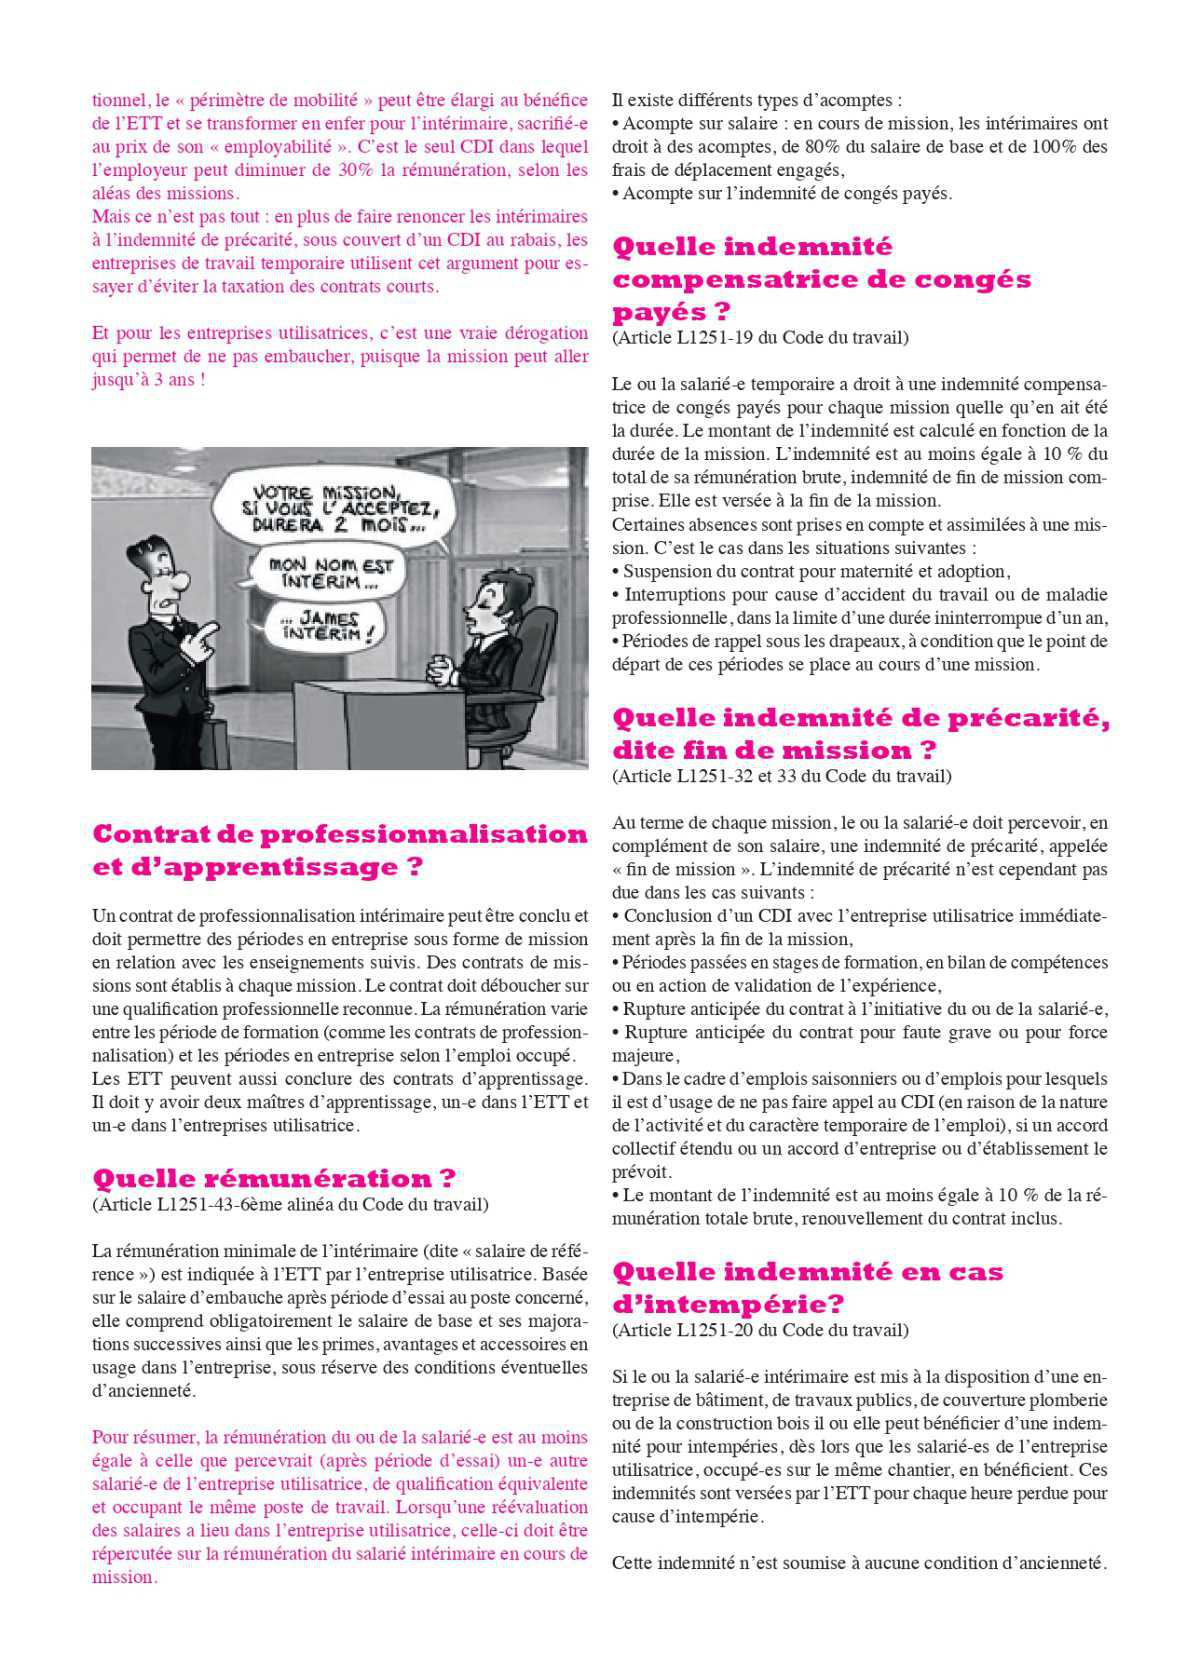 Brochure // Les droits des salariés intérimaires en 28 questions